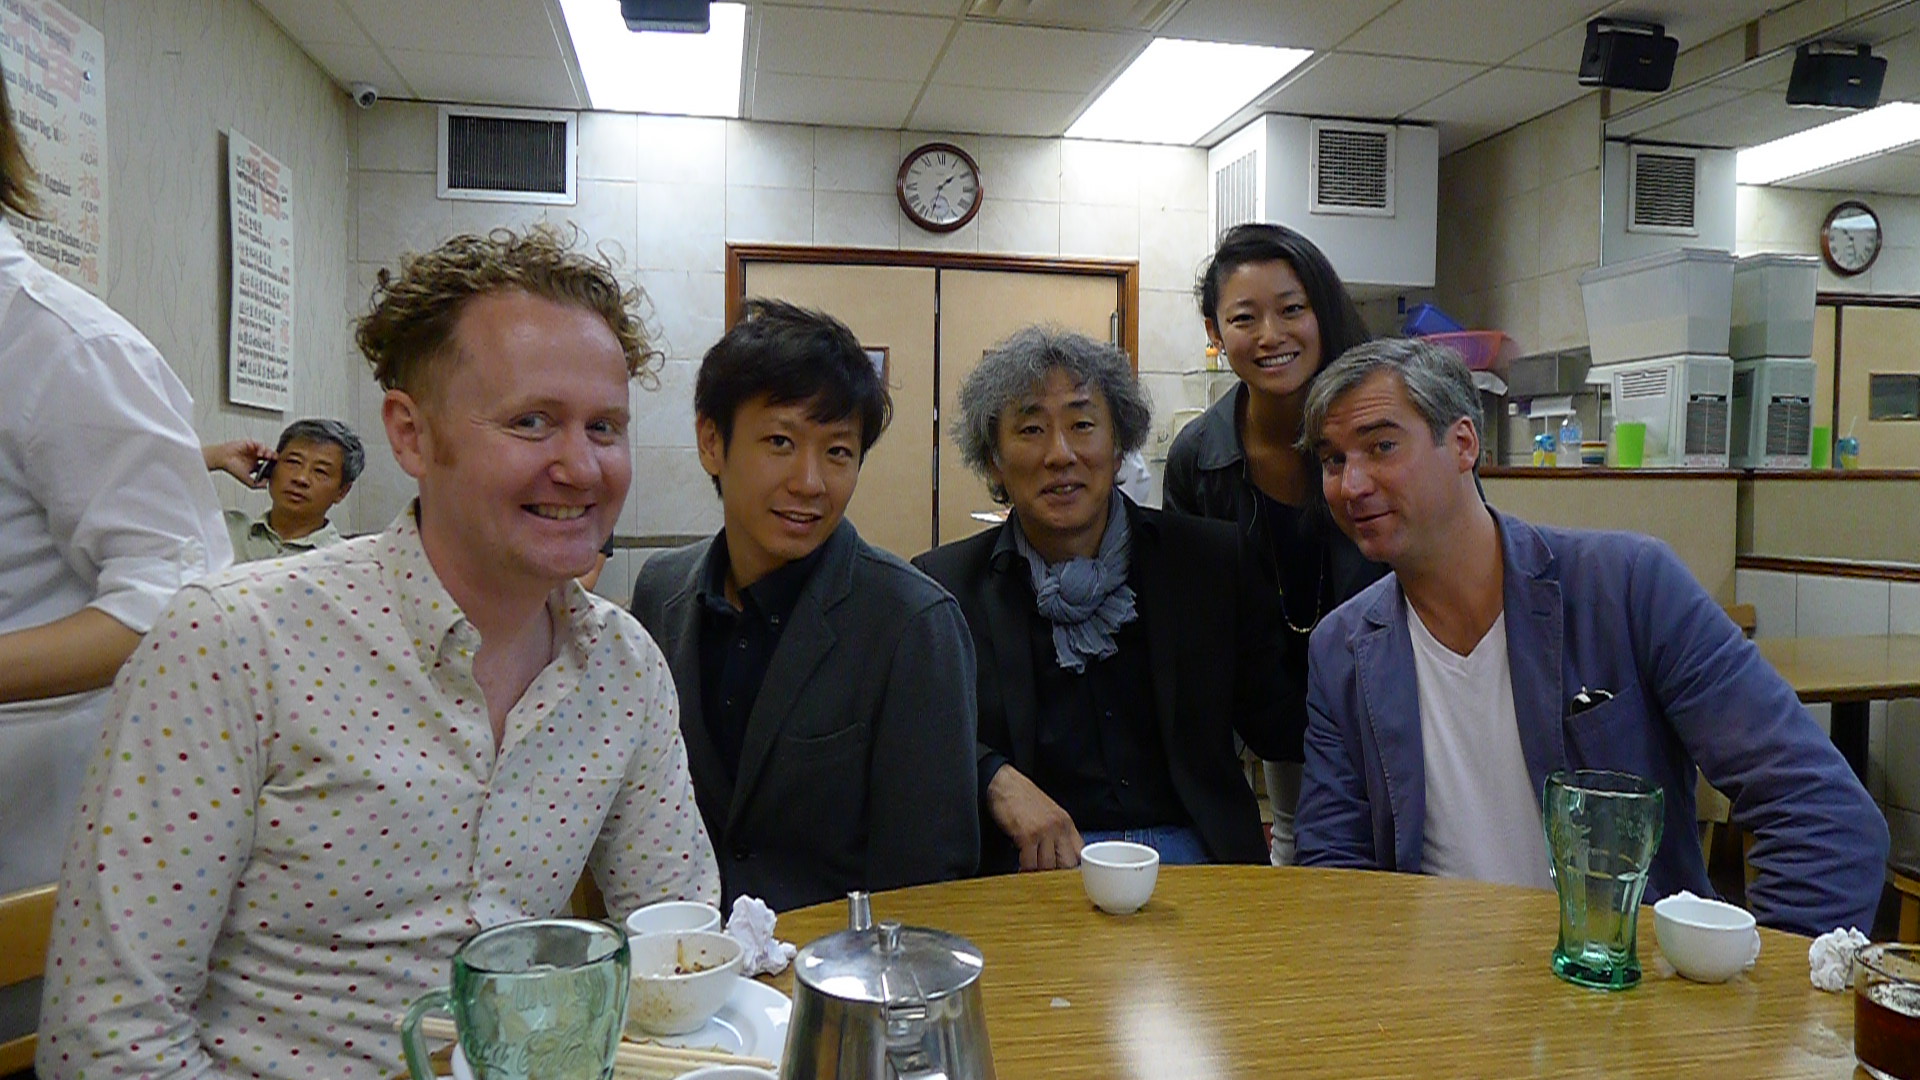 At Toronto's Swatow restaurant with Sake Brewers Kuheiji Kuno and Yusuke Hattori of Banjo Jozo.